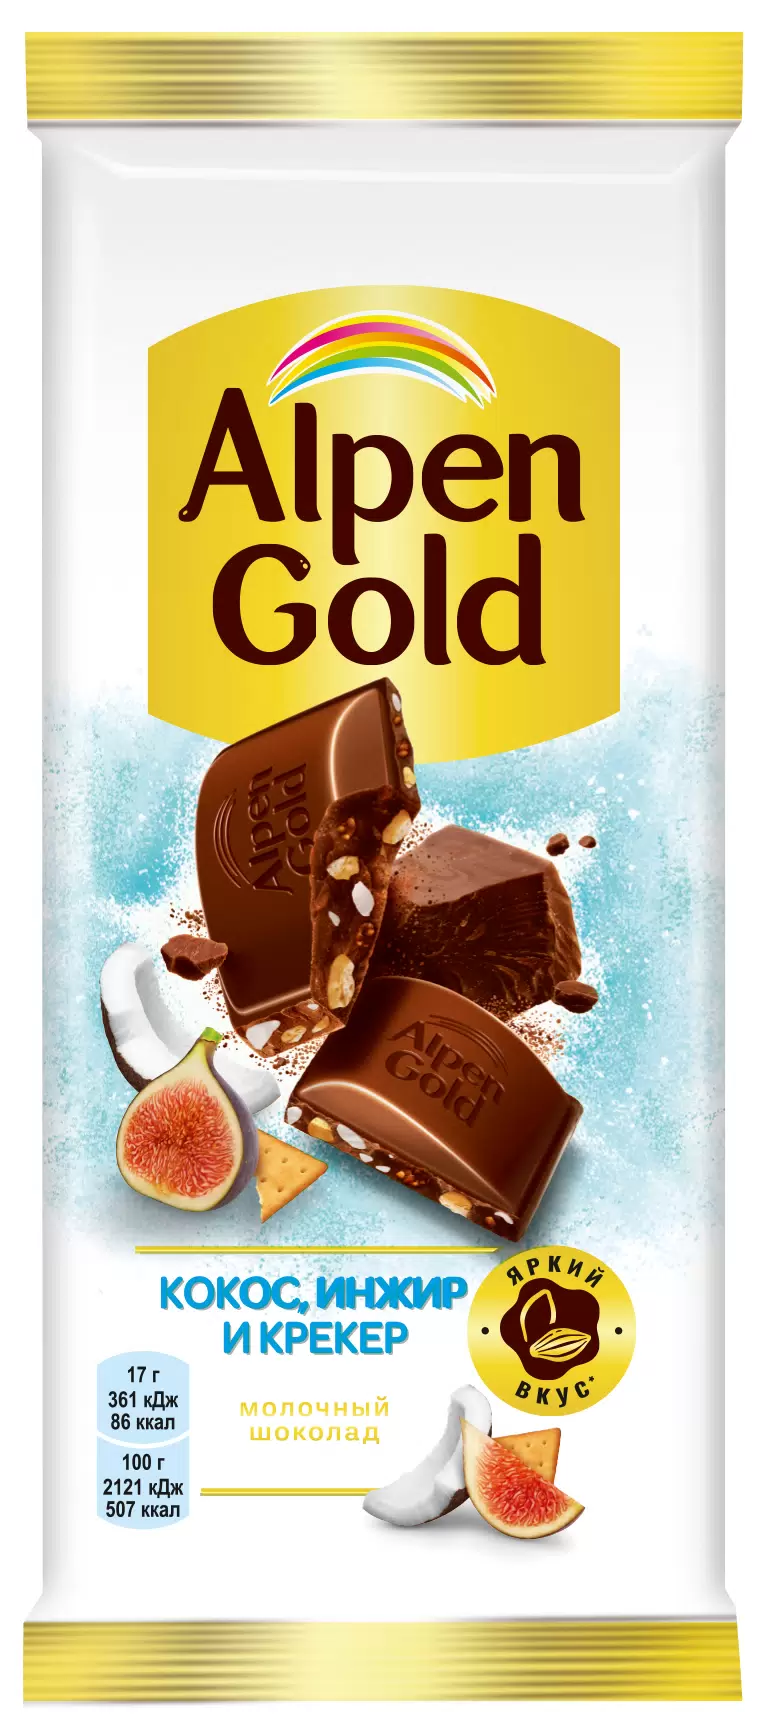 Шоколад Alpen Gold молочный, кокос инжир и крекер, 85г.